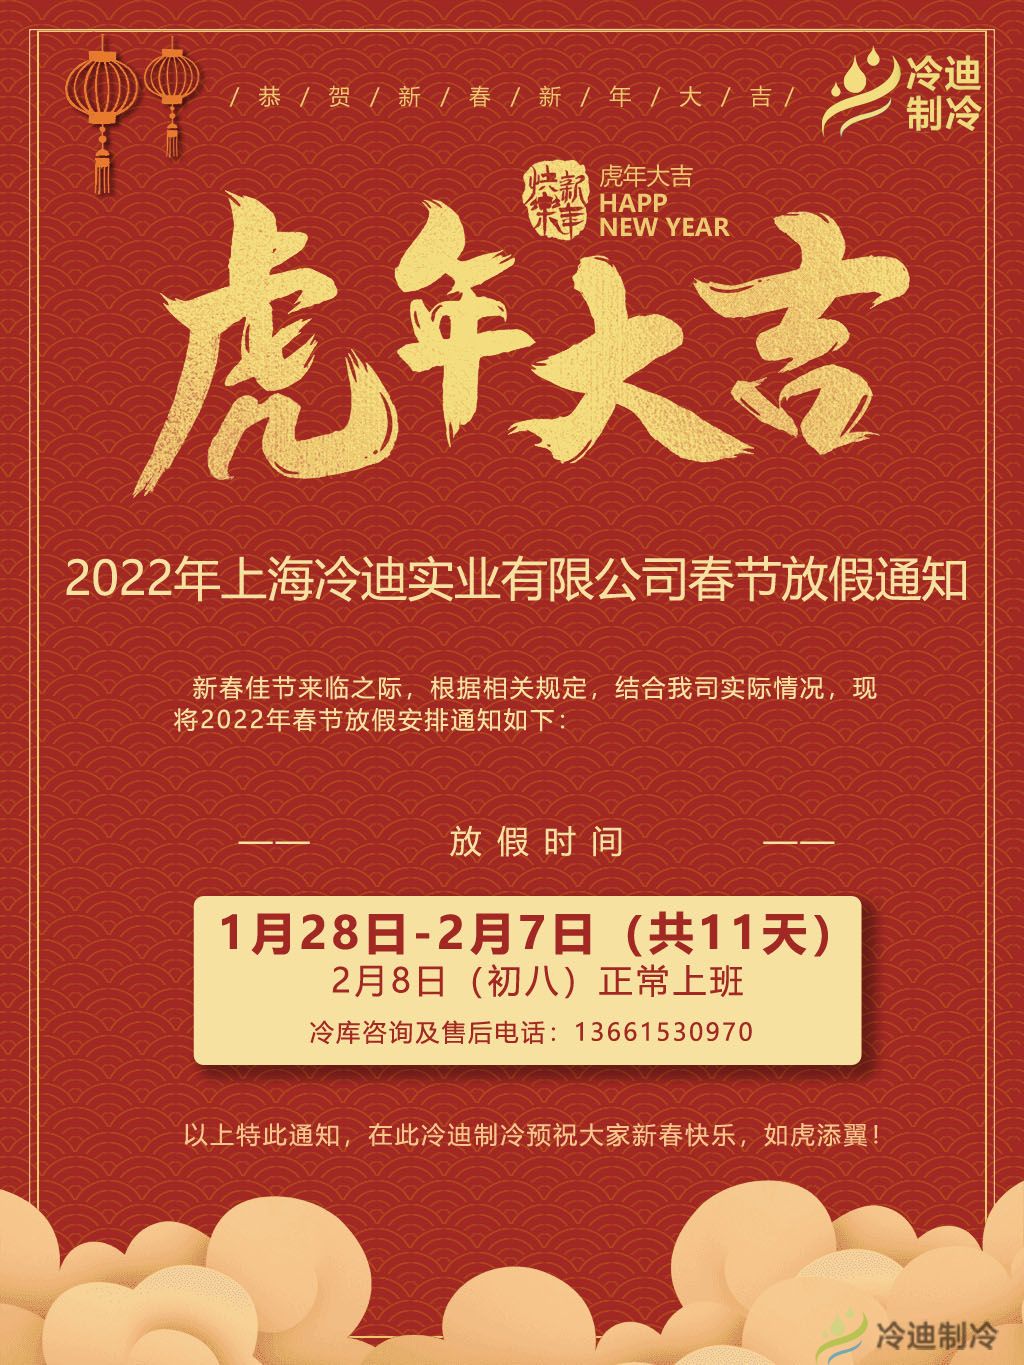 上海冷迪制冷2022年春节放假通知